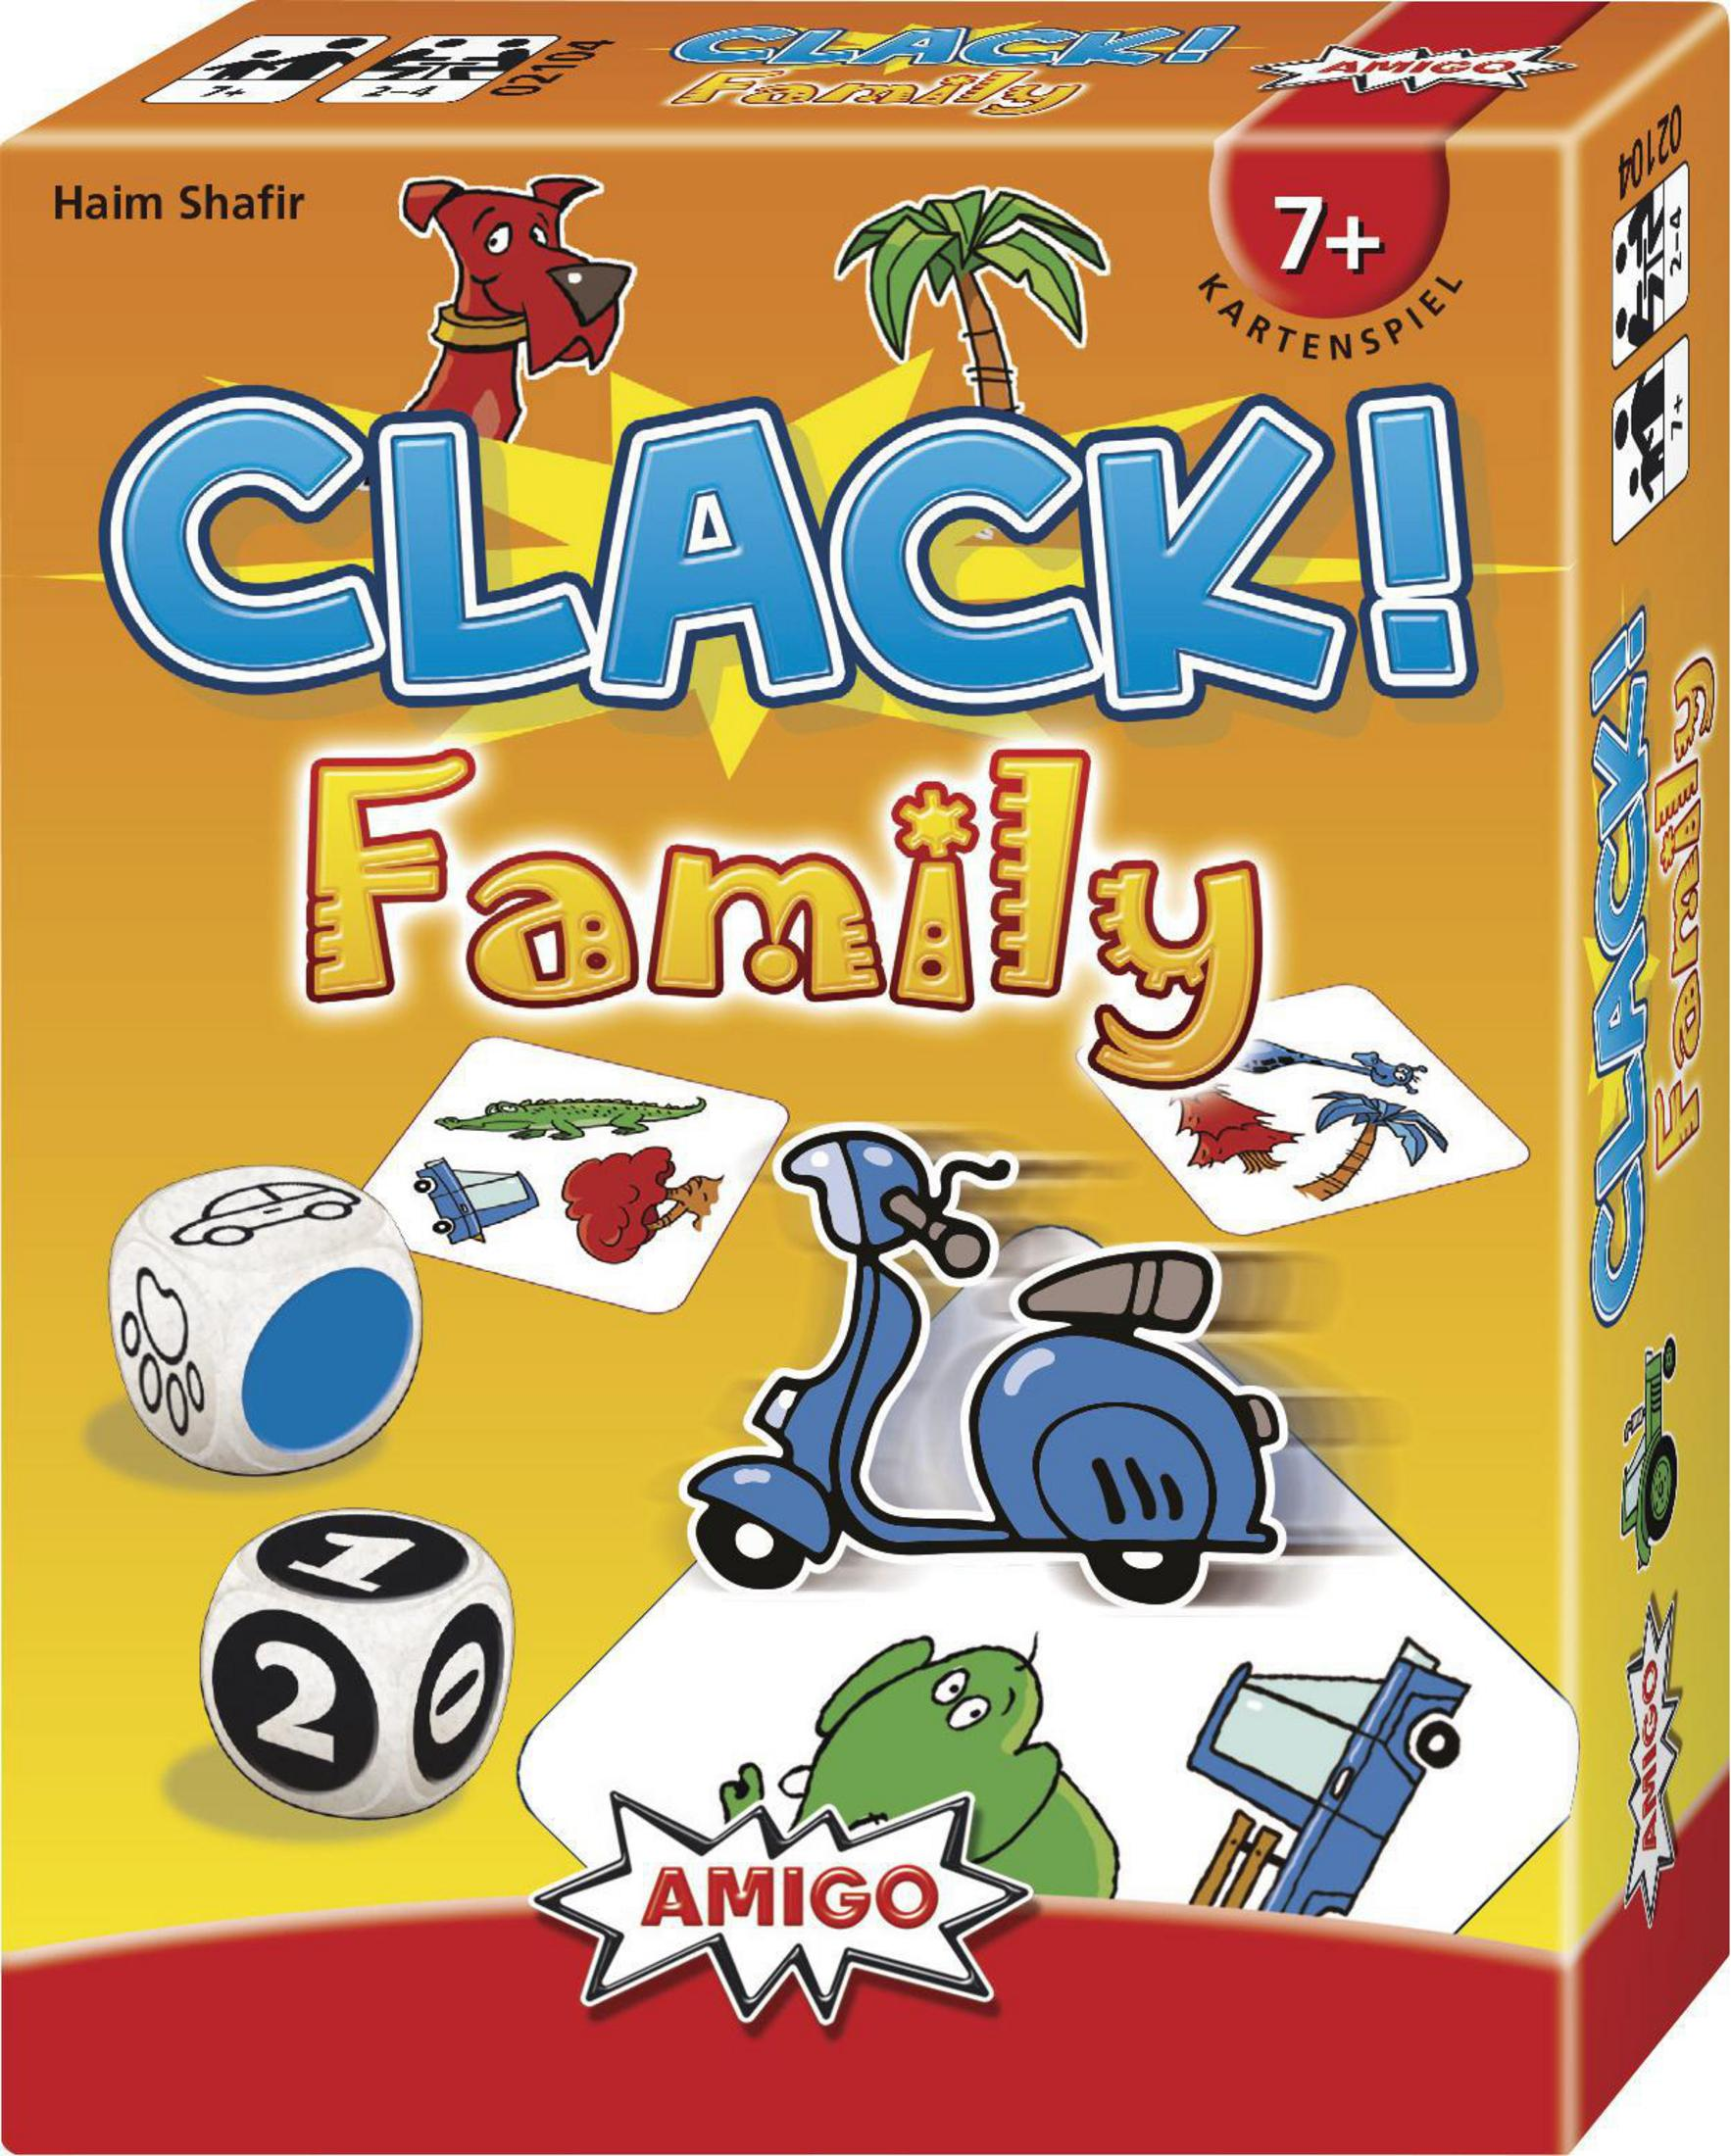 02104 FAMILY Kartenspiel CLACK! AMIGO